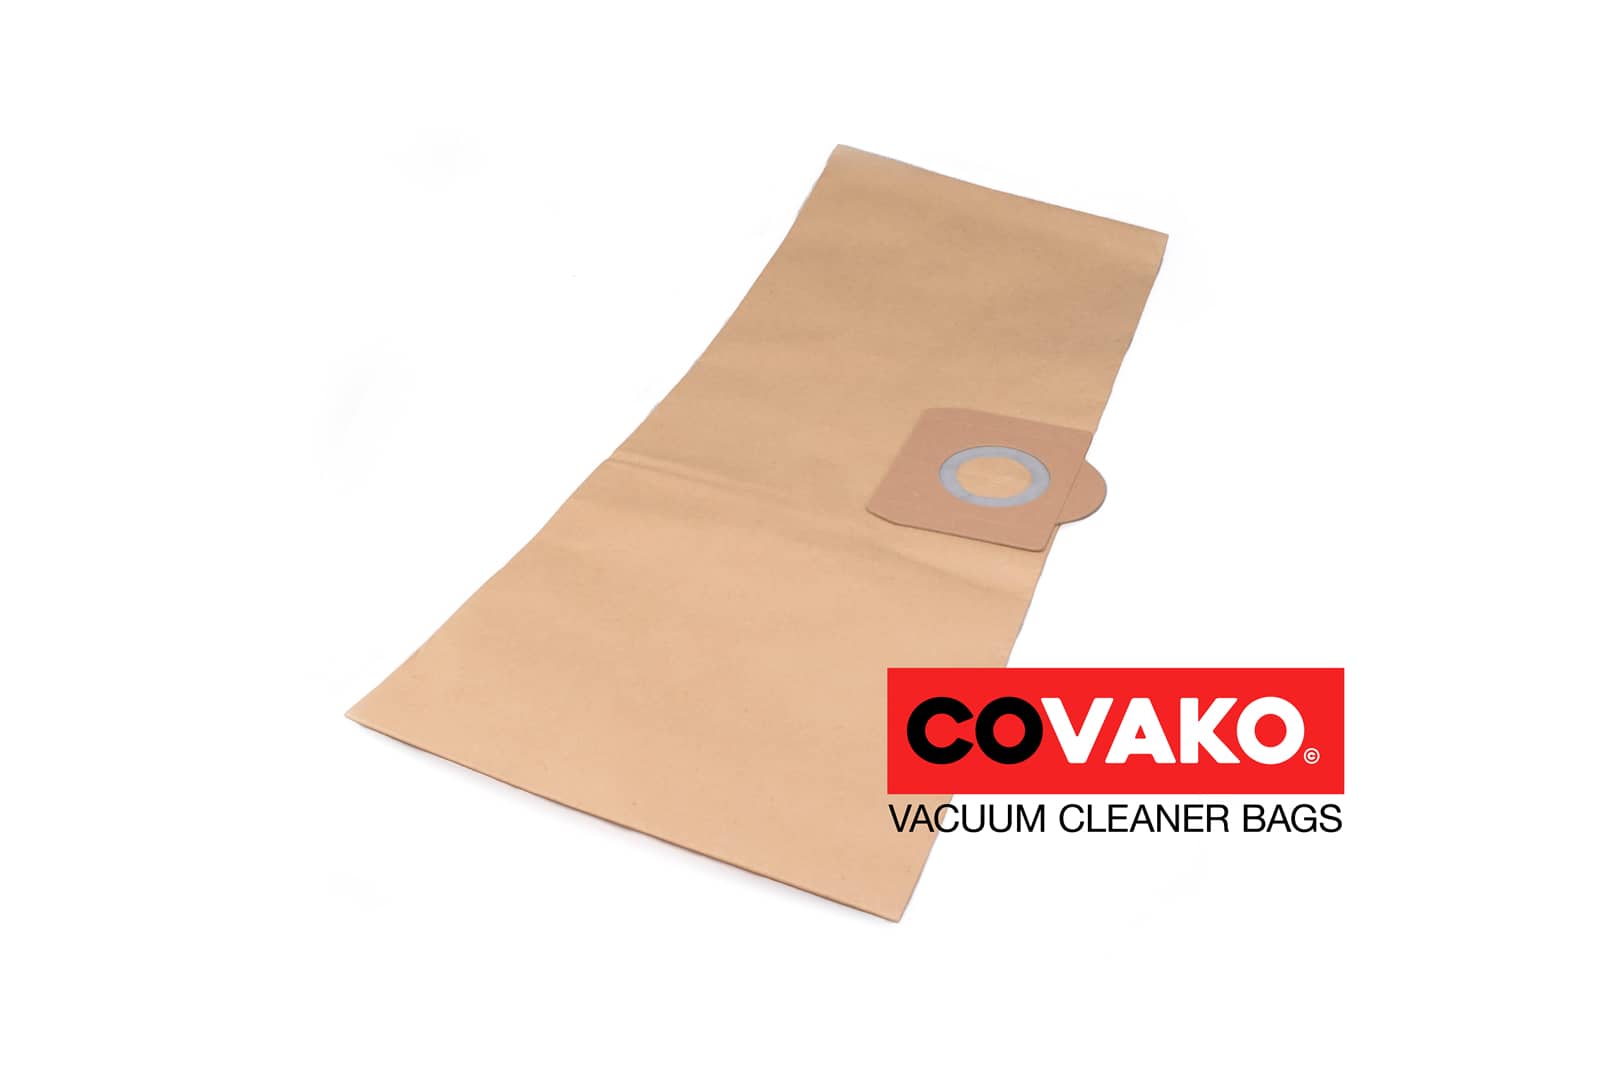 AquaVac Inox 20 / Paper - AquaVac vacuum cleaner bags